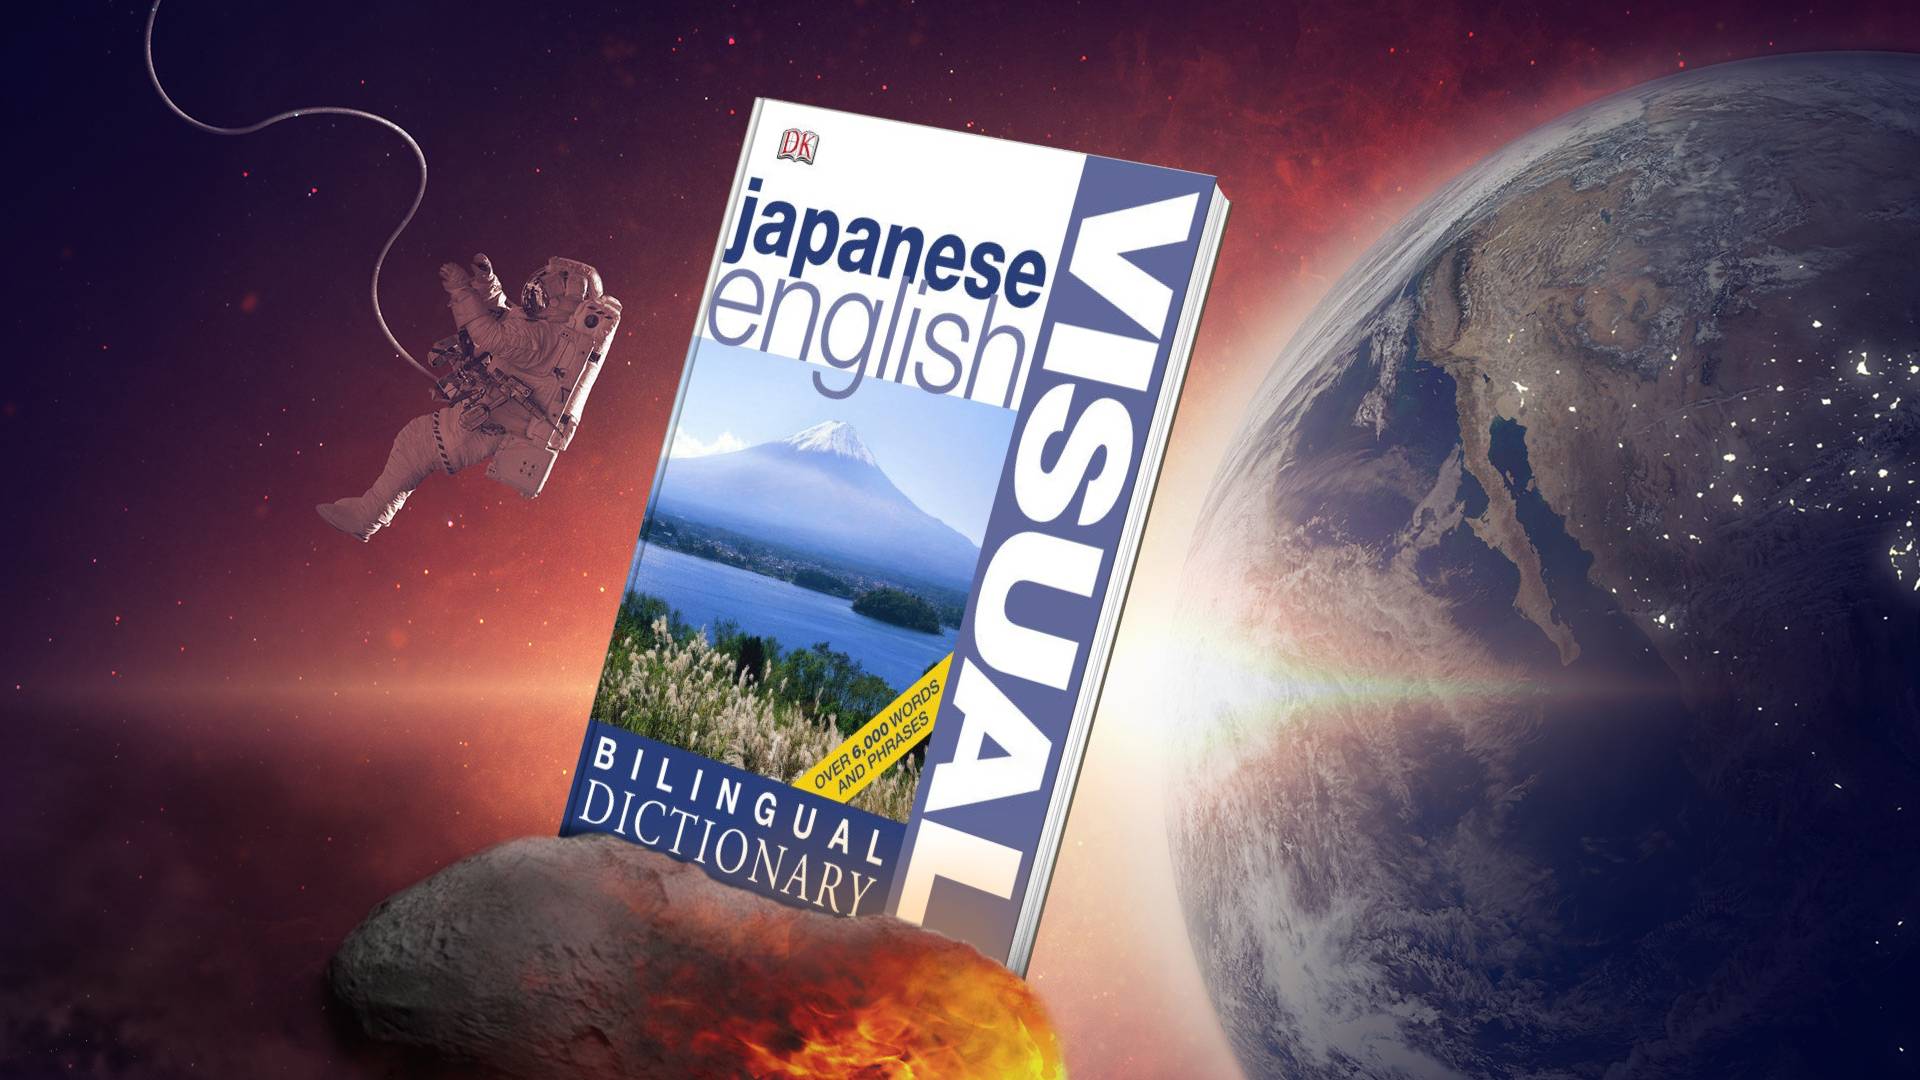 خرید دیکشنری زبان ژاپنی | فرهنگ تصویری زبان ژاپنی | Bilingual Visual Dictionary Japanese English | دیکشنری تصویری ویژوال ژاپنی انگلیسی